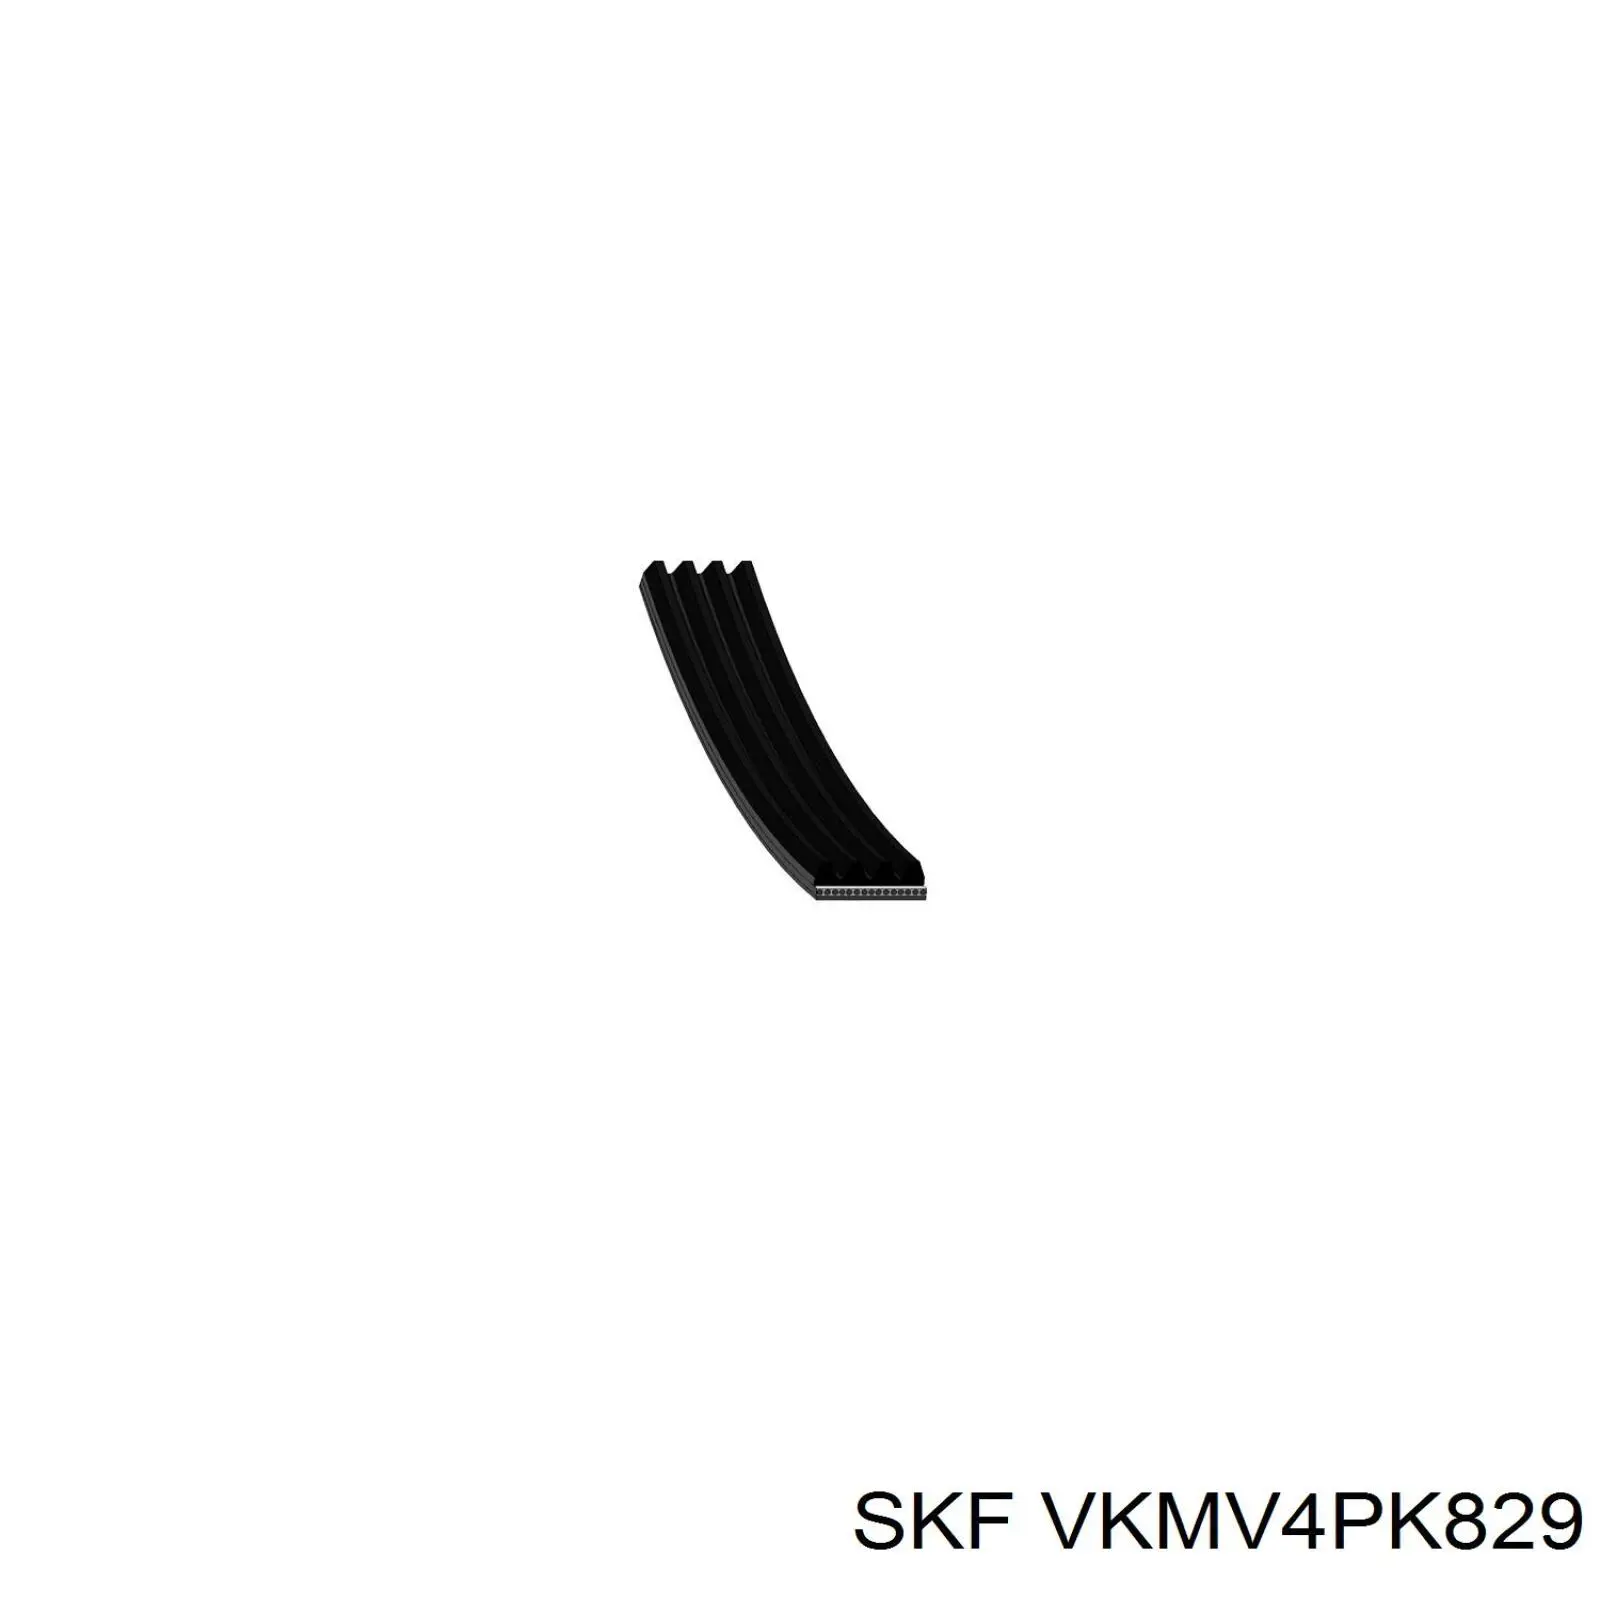 VKMV4PK829 SKF correa trapezoidal